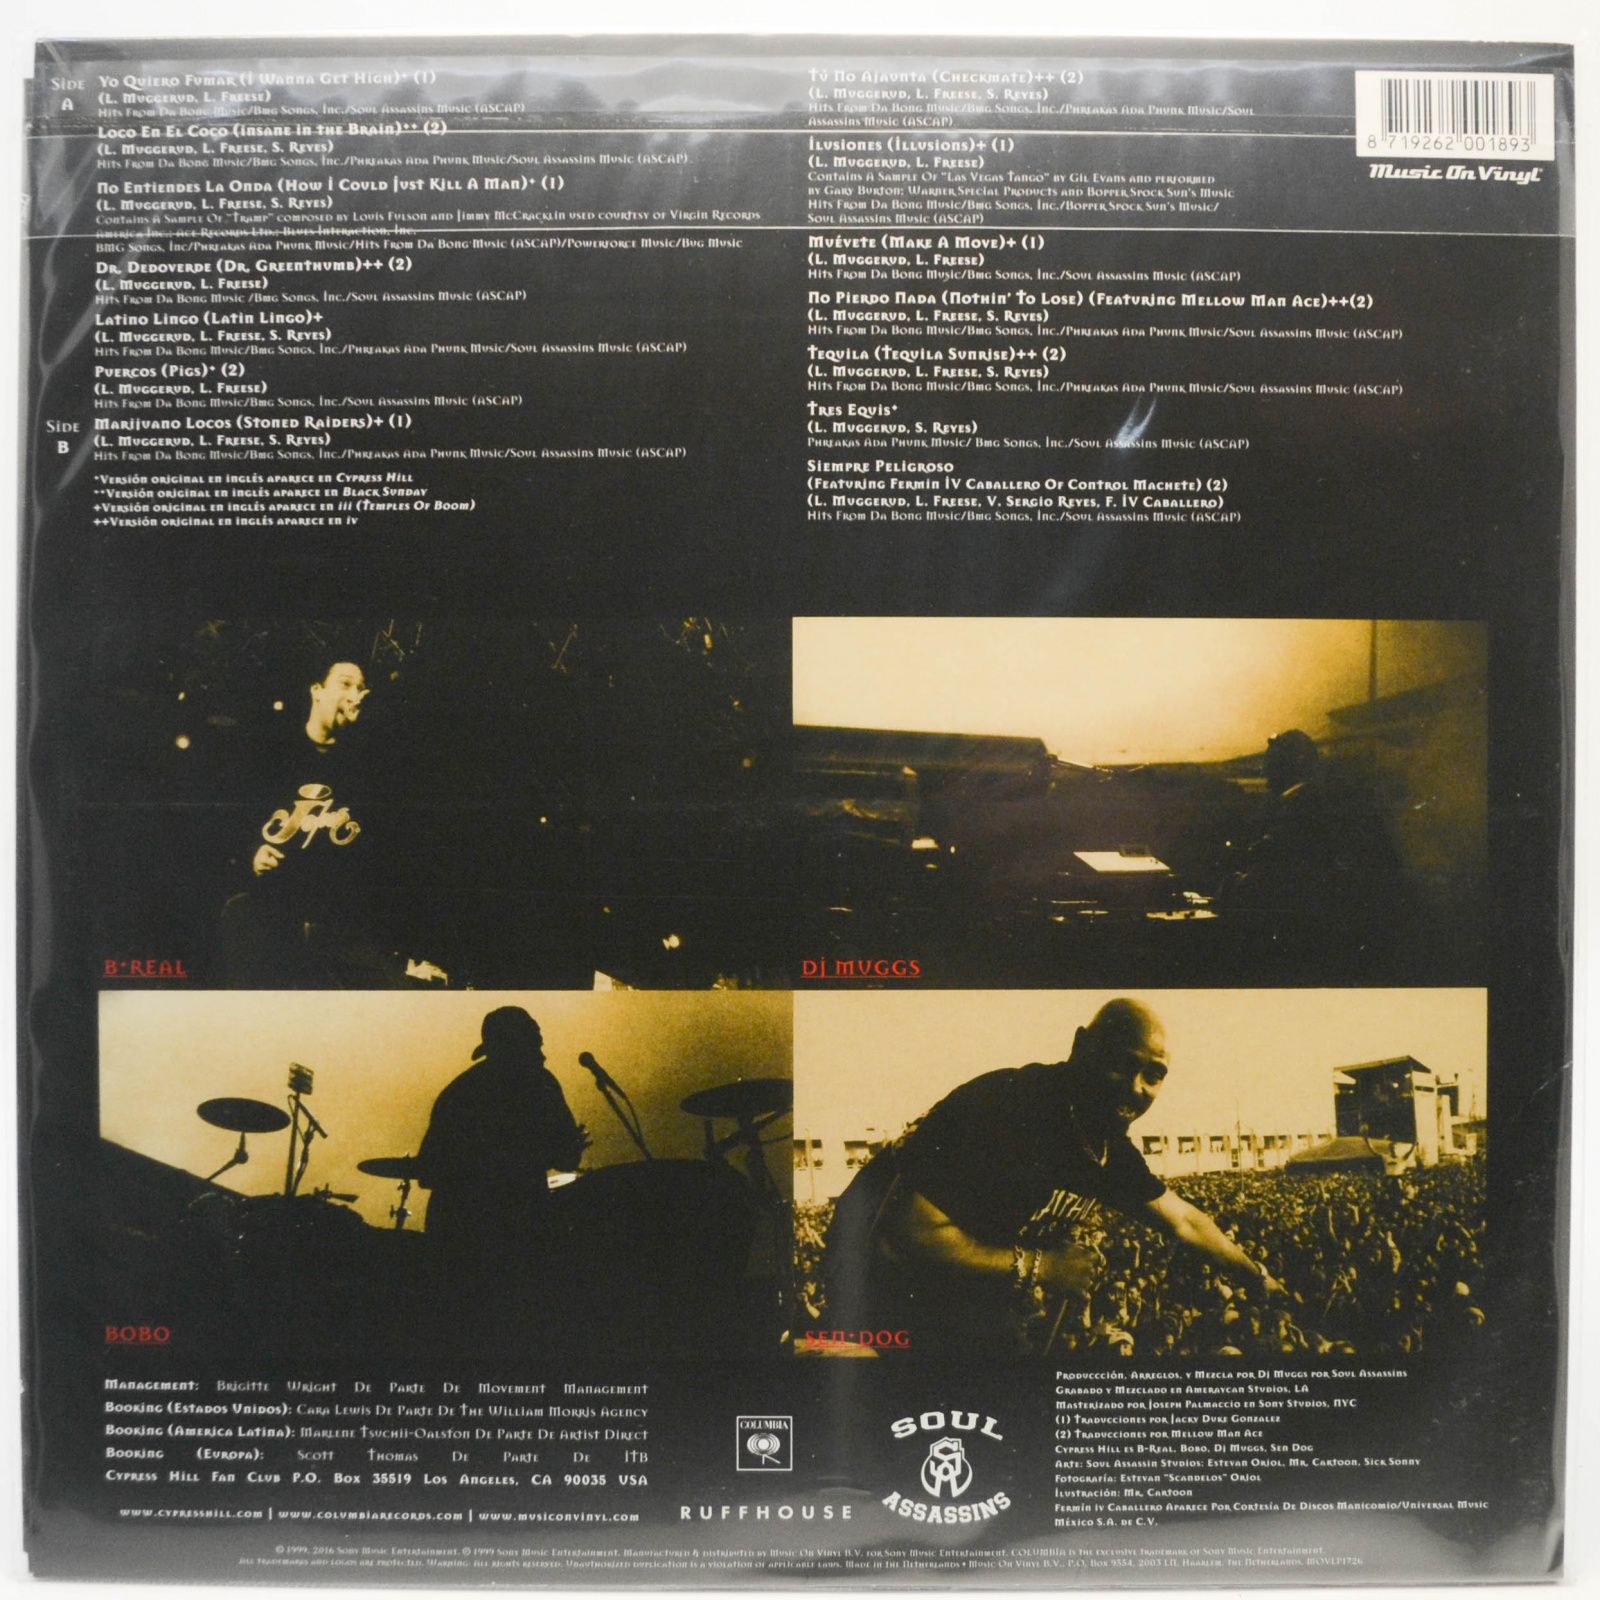 Cypress Hill — Los Grandes Éxitos En Español, 1999